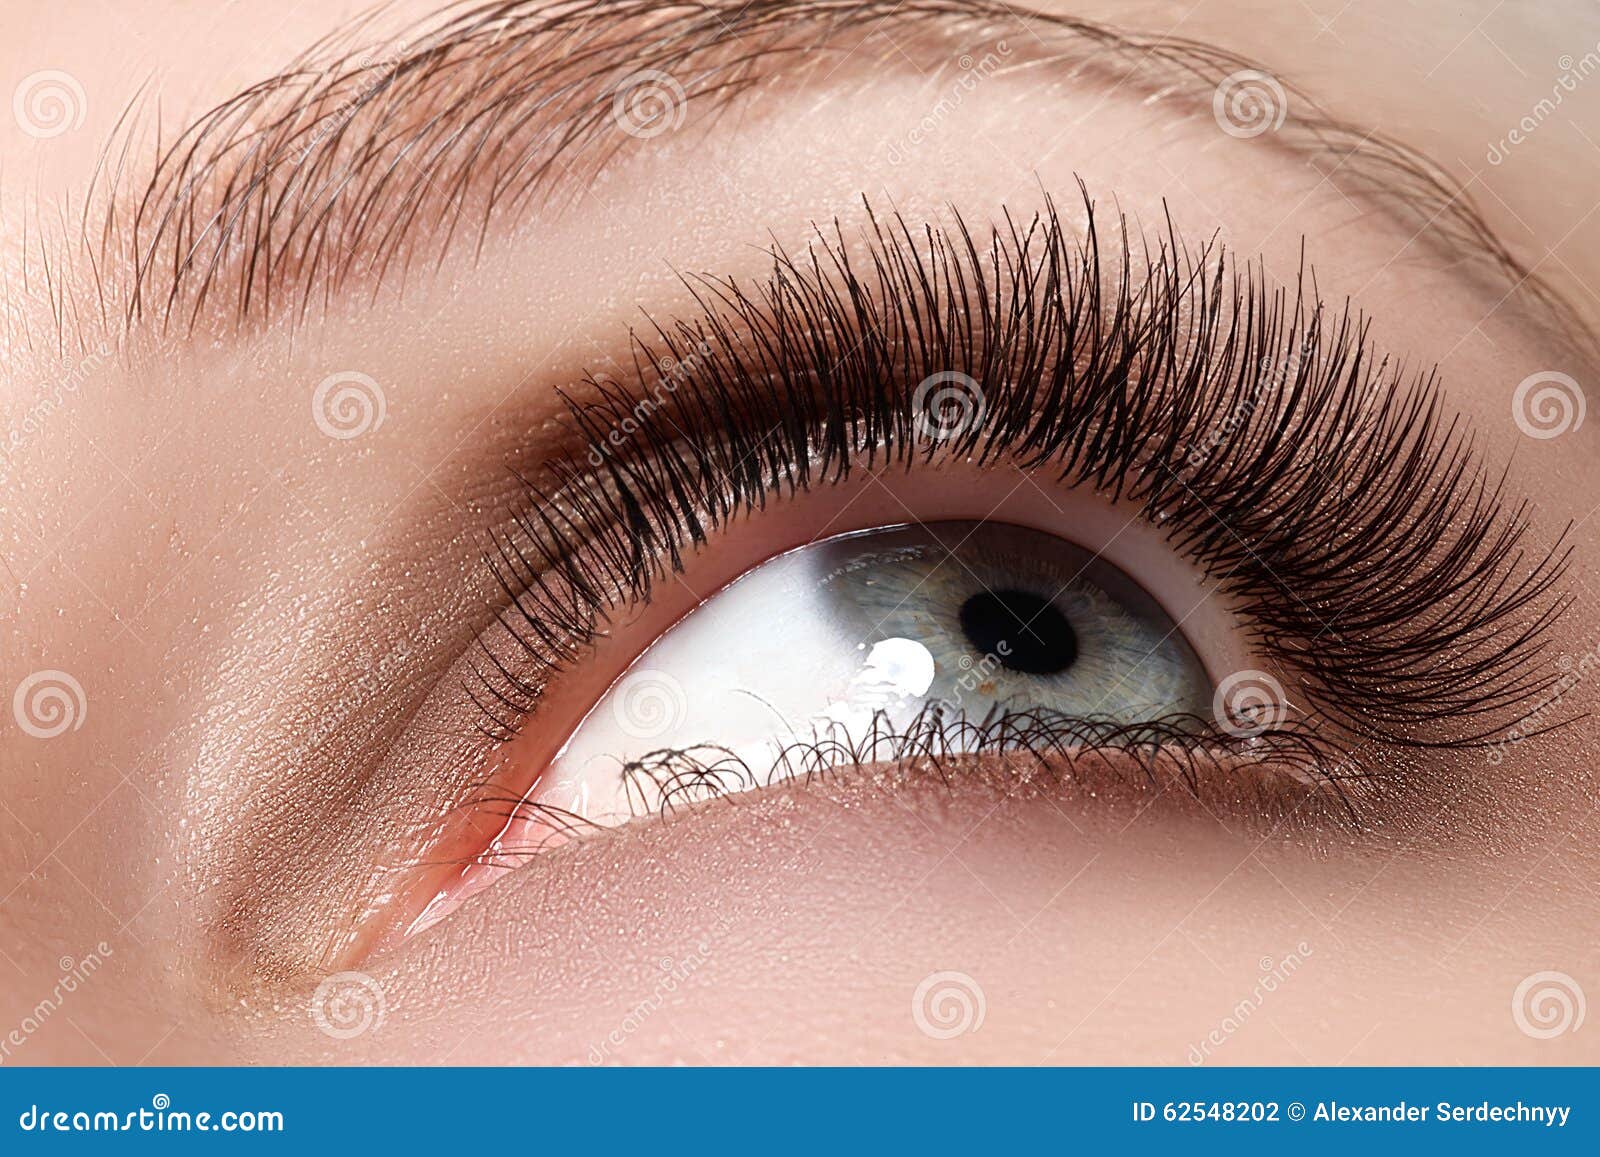 macro shot of woman beautiful eye with extremely long eyelashes